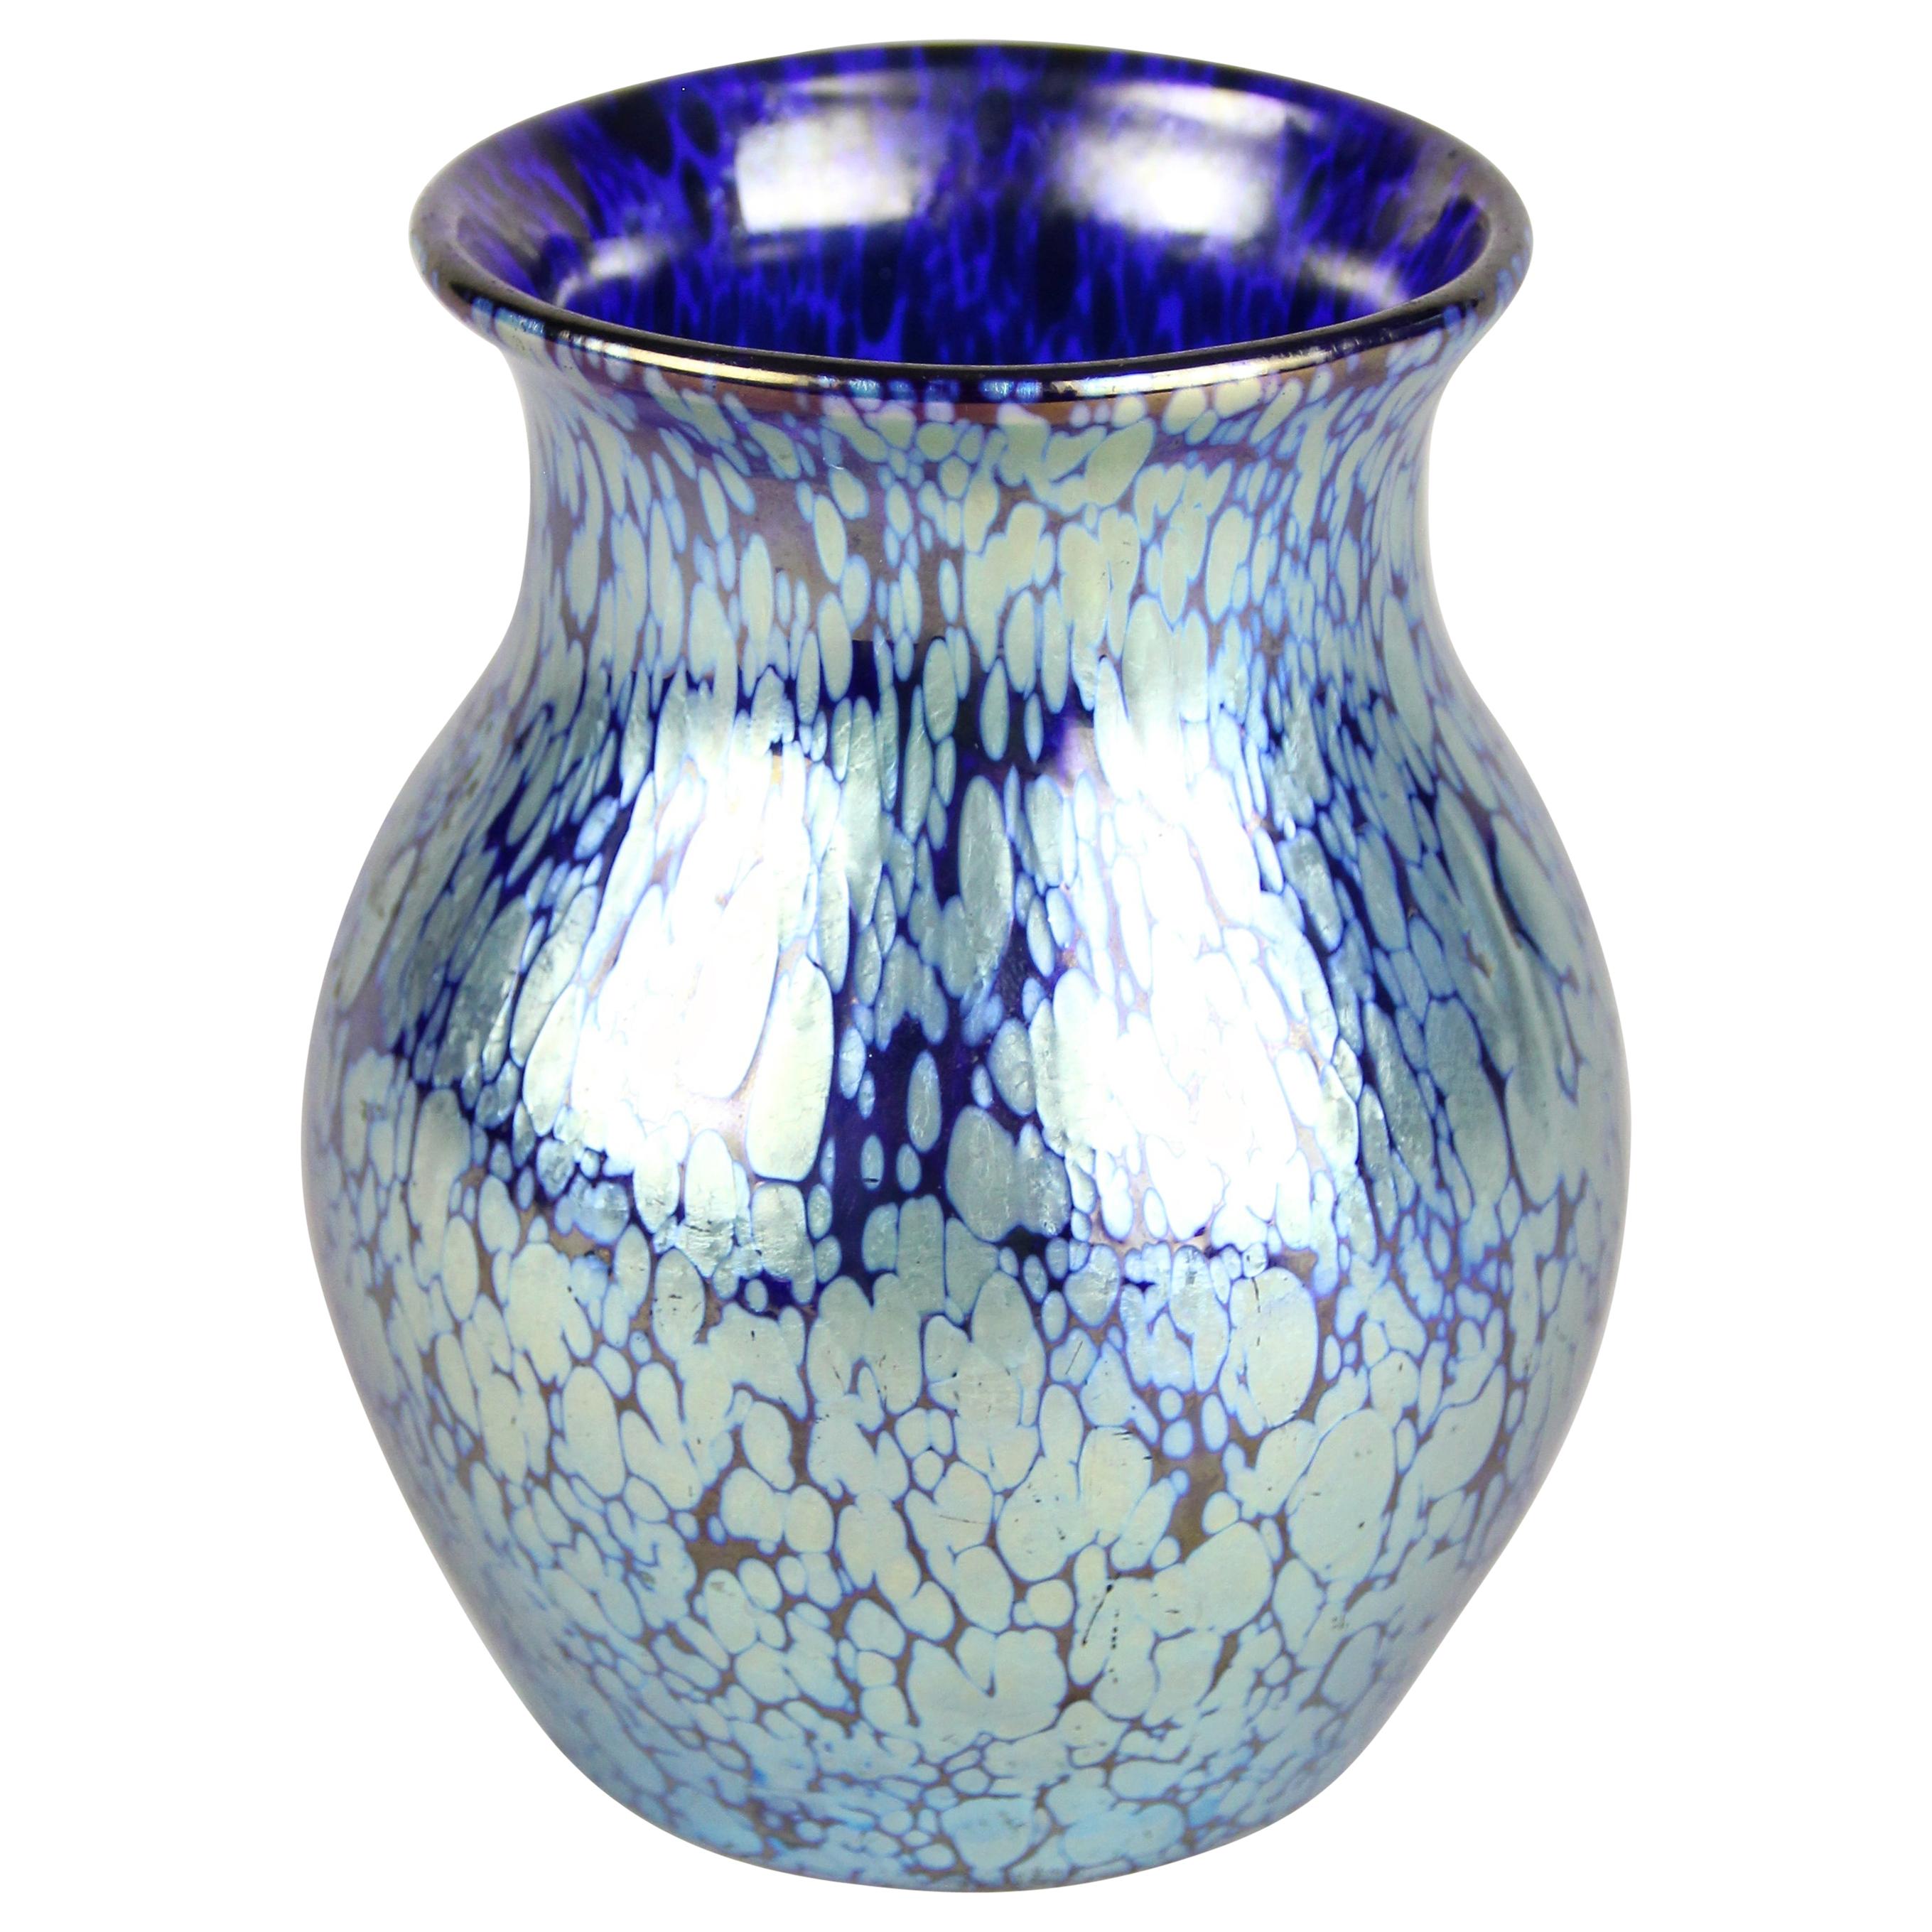 Loetz Witwe Art Nouveau Glass Vase Decor Cobalt Papillon, Bohemia, circa 1903